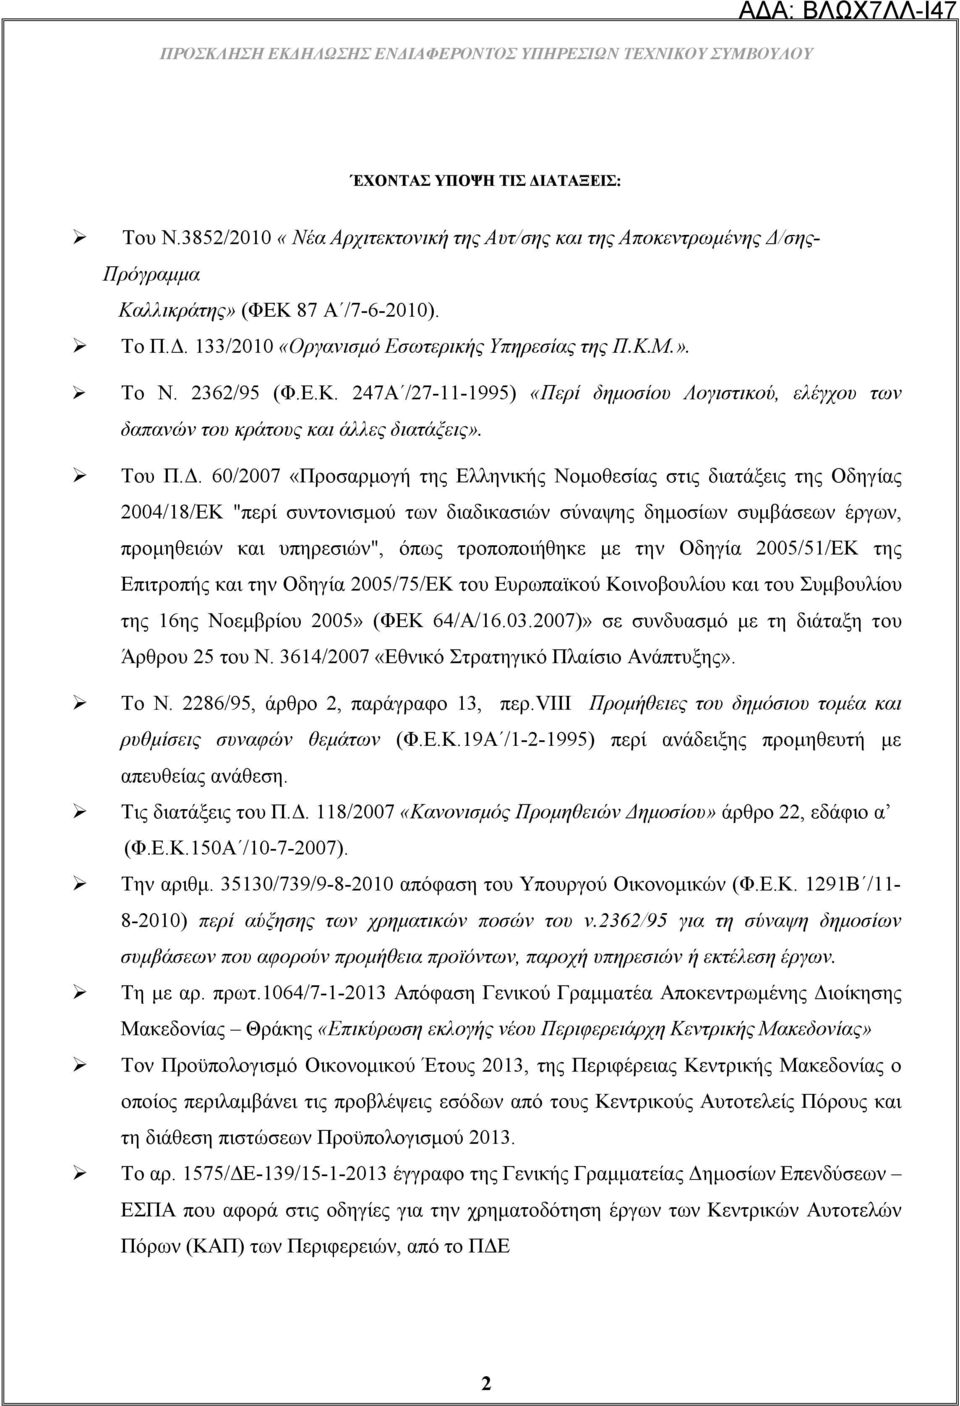 60/2007 «Προσαρμογή της Ελληνικής Νομοθεσίας στις διατάξεις της Οδηγίας 2004/18/ΕΚ "περί συντονισμού των διαδικασιών σύναψης δημοσίων συμβάσεων έργων, προμηθειών και υπηρεσιών", όπως τροποποιήθηκε με